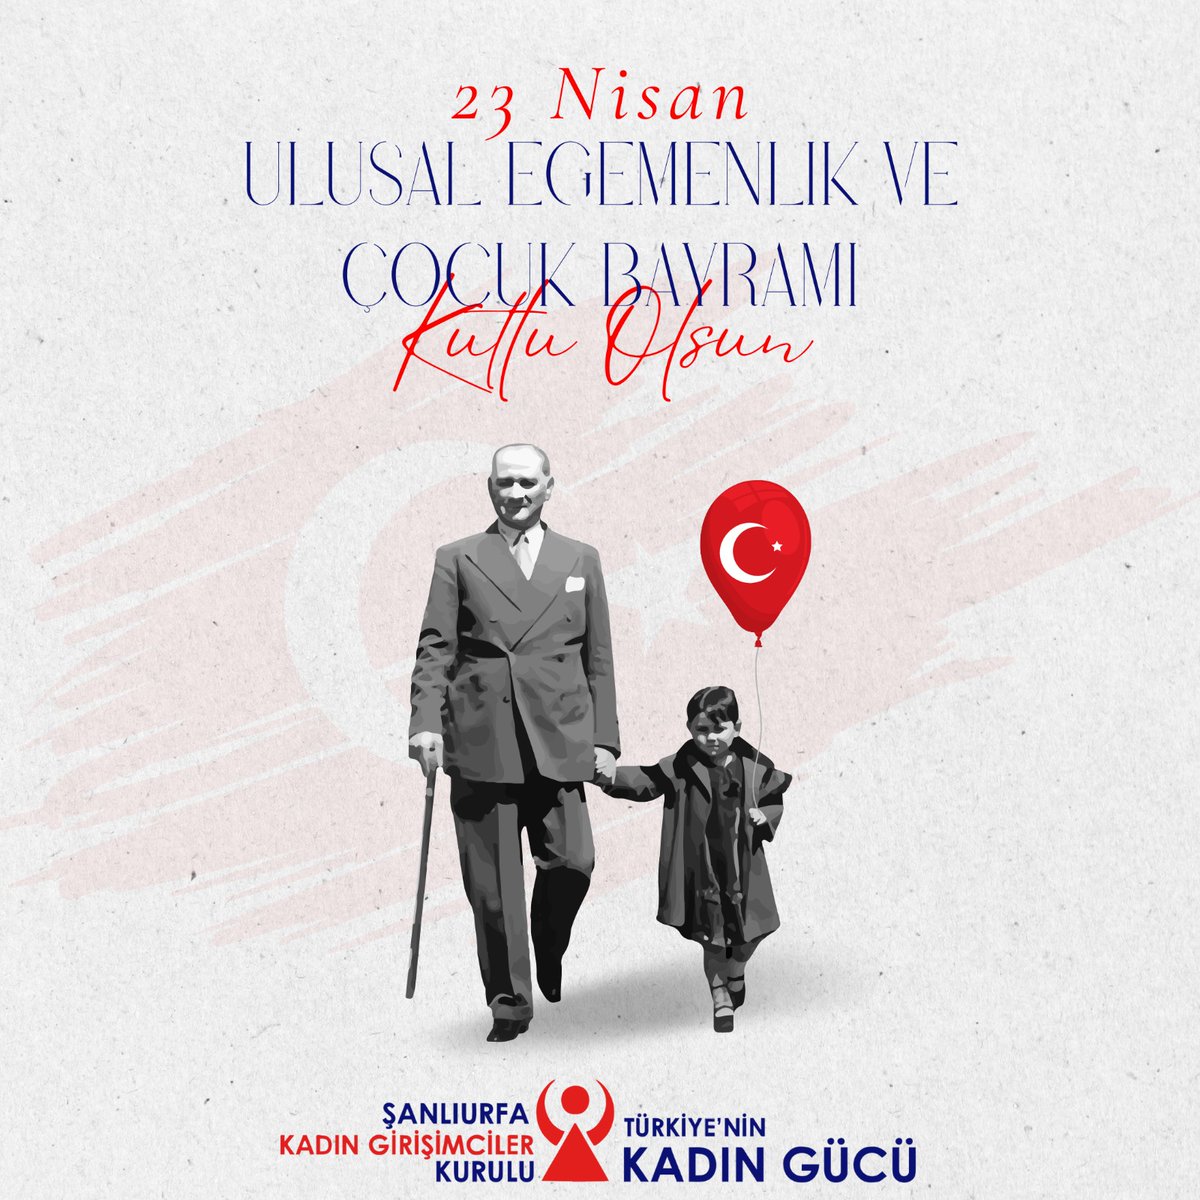 'Küçük hanımlar, küçük beyler! Sizler hepiniz geleceğin bir gülü, yıldızı ve ikbal ışığısınız. Memleketi asıl ışığa boğacak olan sizsiniz. Kendinizin ne kadar önemli, değerli olduğunuzu düşünerek ona göre çalışınız. Sizlerden çok şey bekliyoruz.' Gazi Mustafa Kemal Atatürk